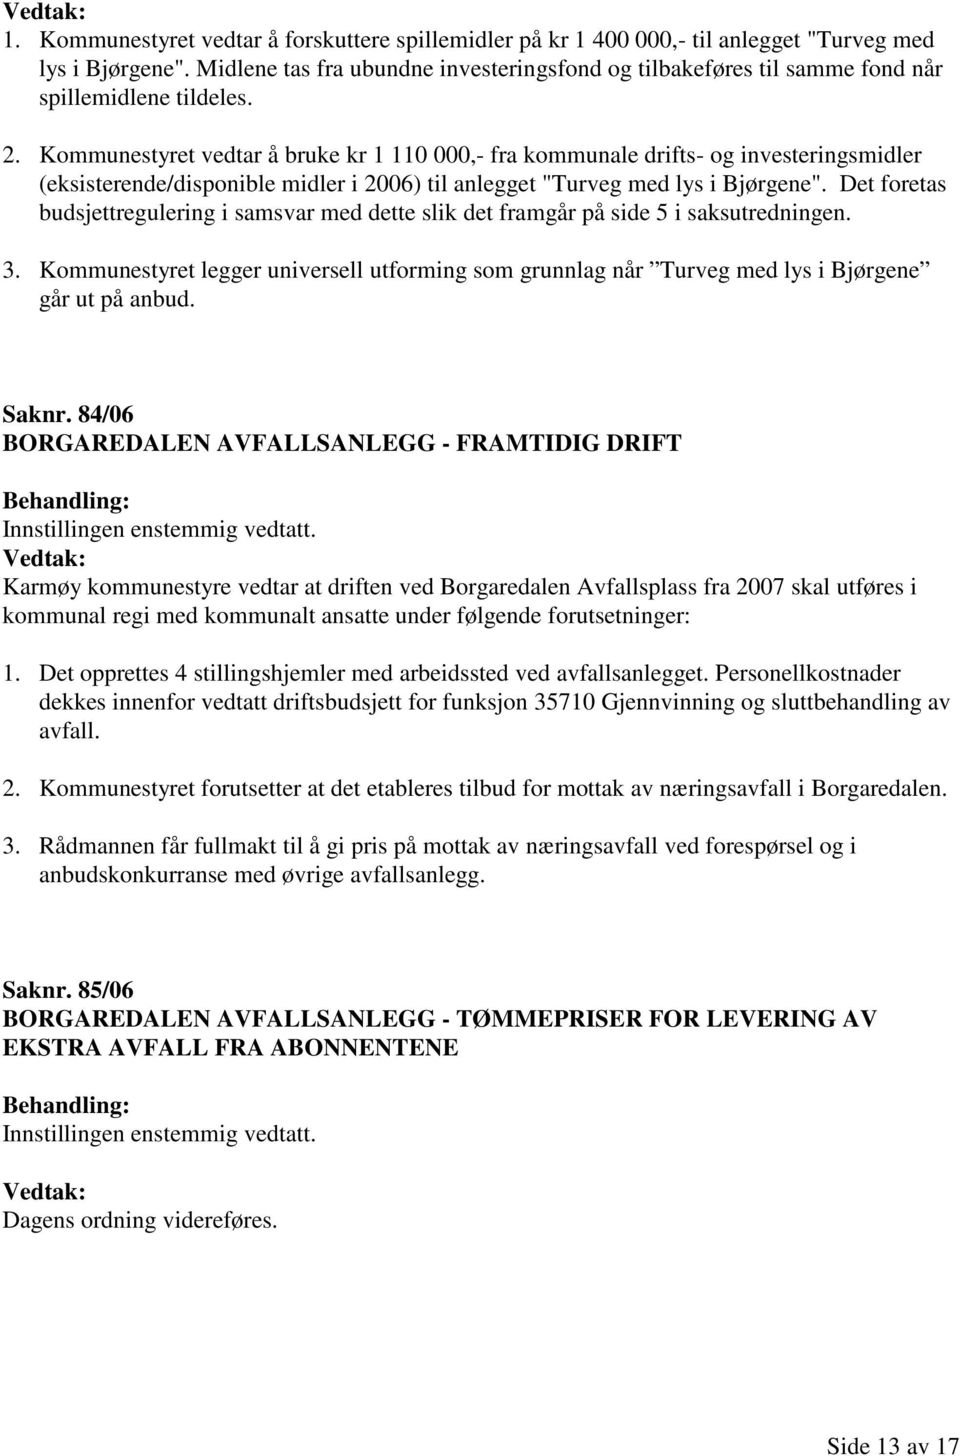 Kommunestyret vedtar å bruke kr 1 110 000,- fra kommunale drifts- og investeringsmidler (eksisterende/disponible midler i 2006) til anlegget "Turveg med lys i Bjørgene".